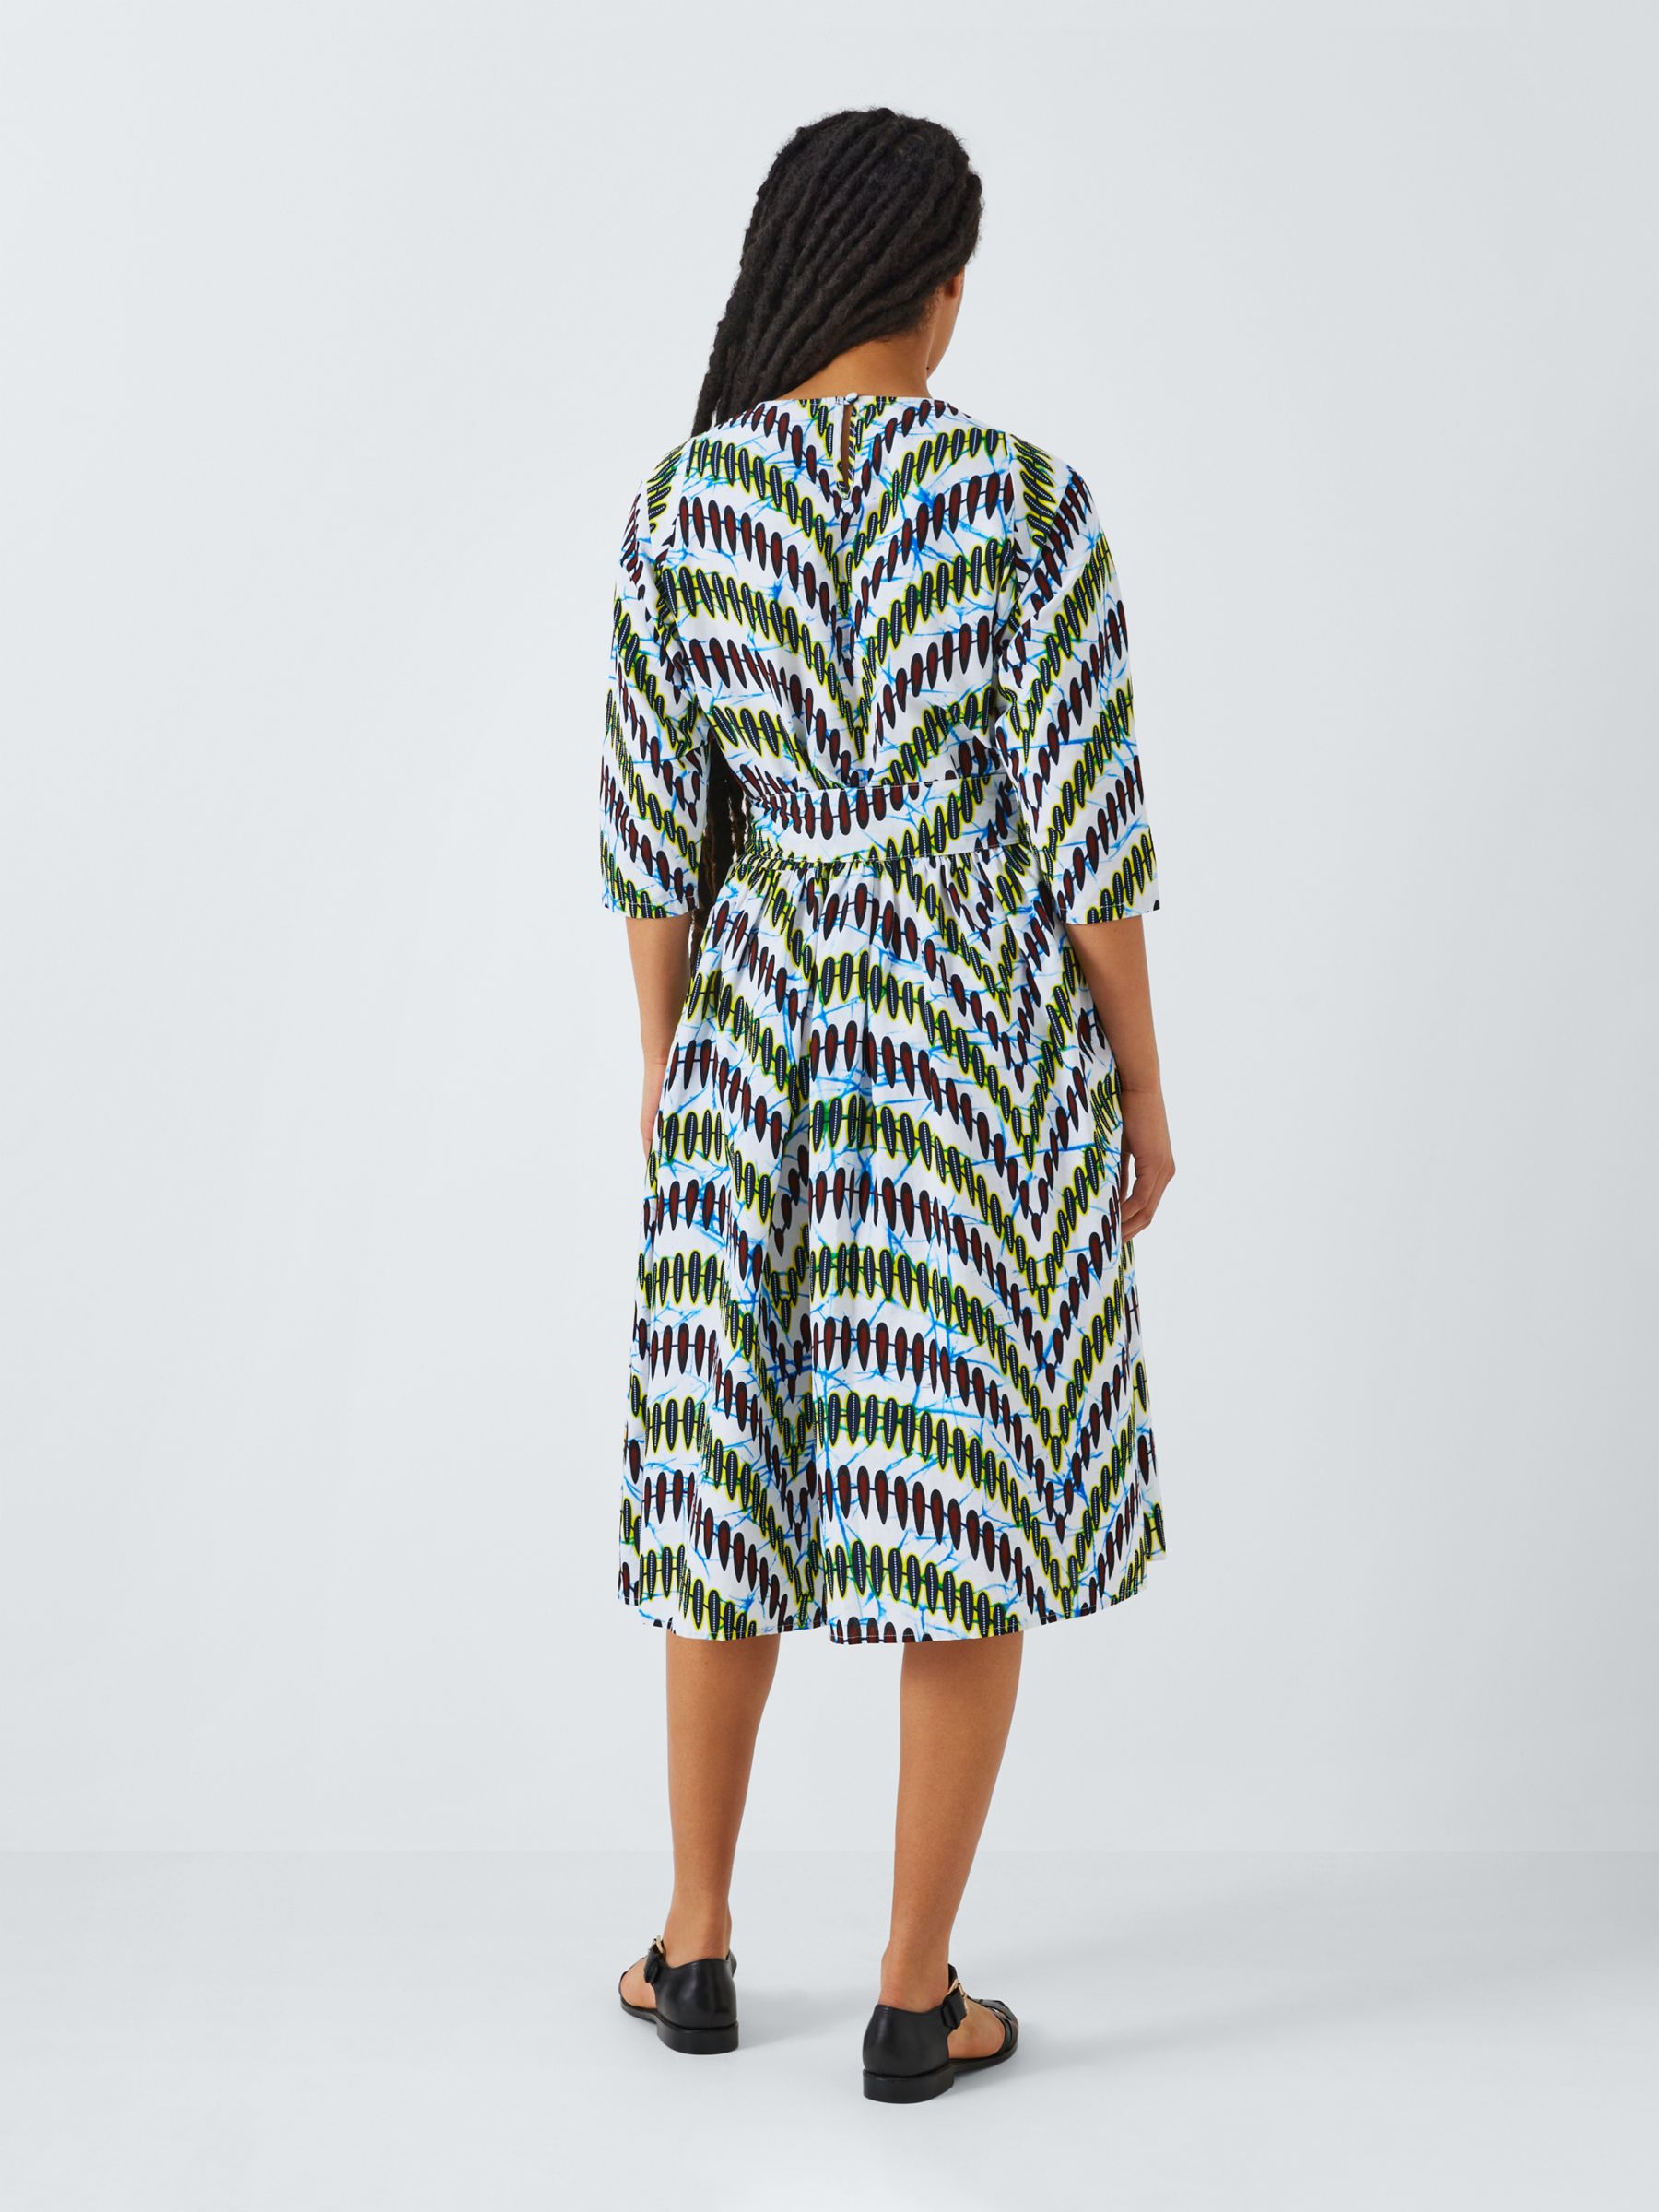 Kemi Telford Geometric Stripe Dress, Multi, L